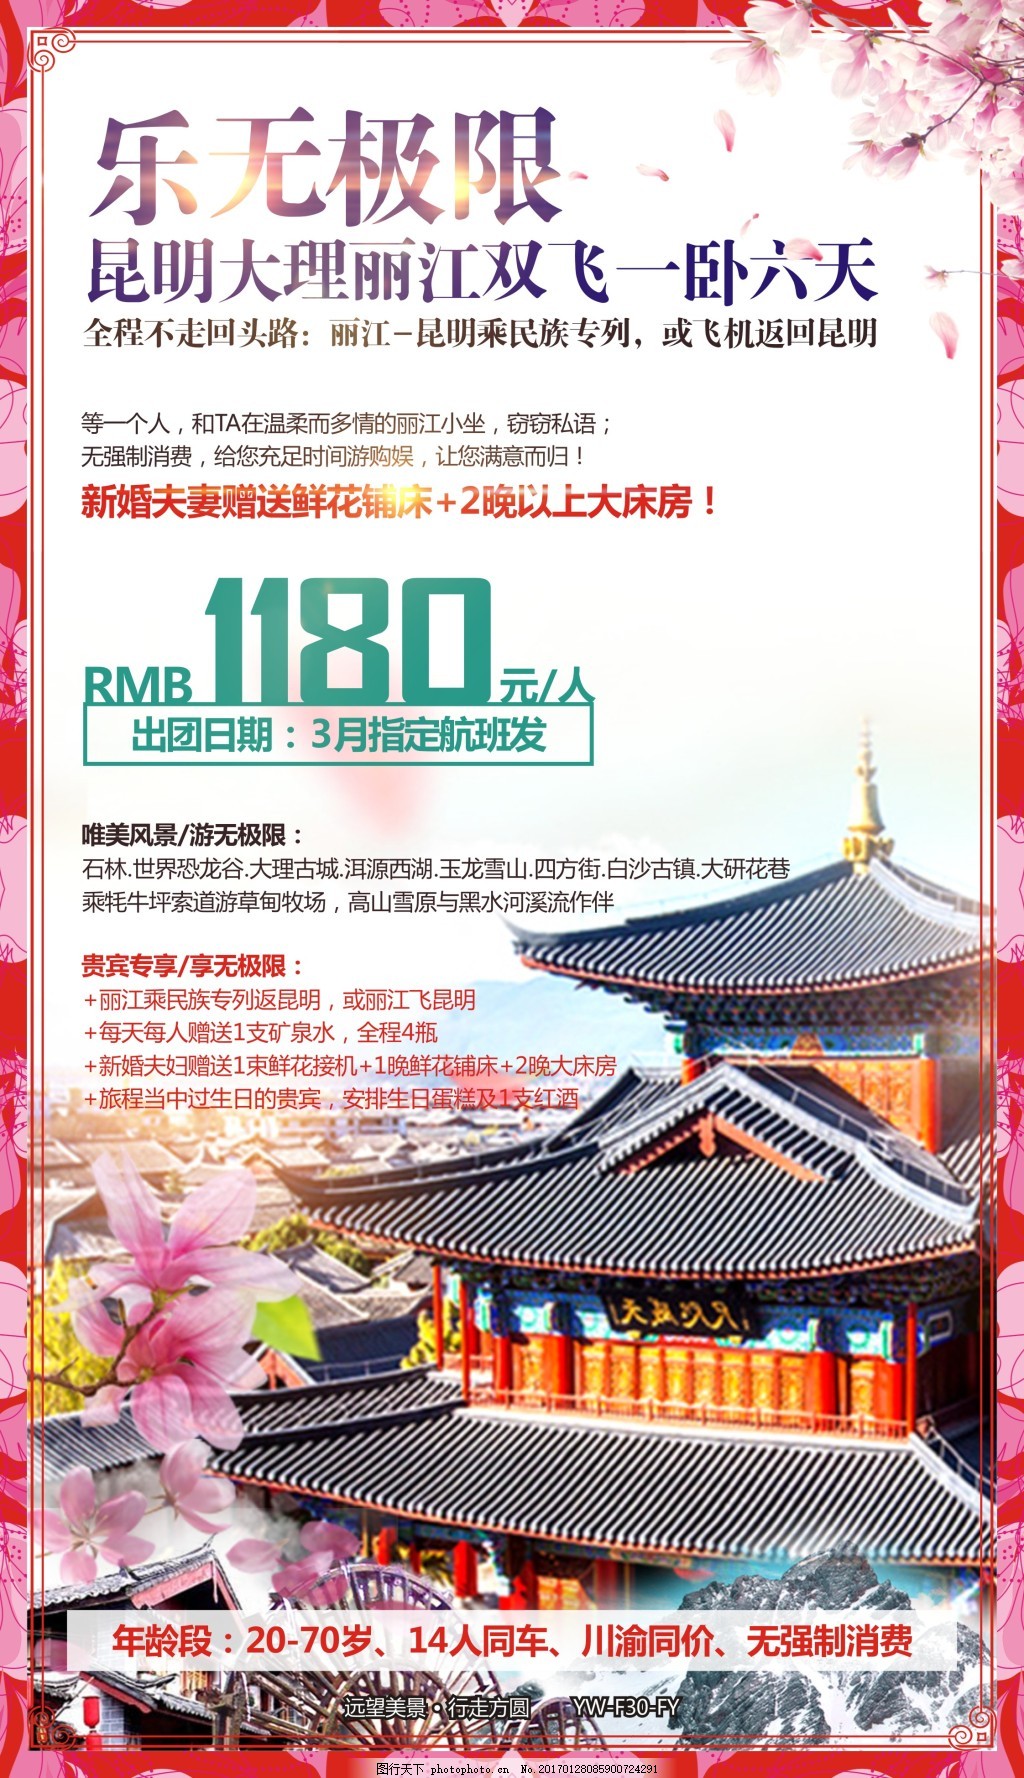 乐无极限云南旅游宣传广告设计,昆明 丽江 大理